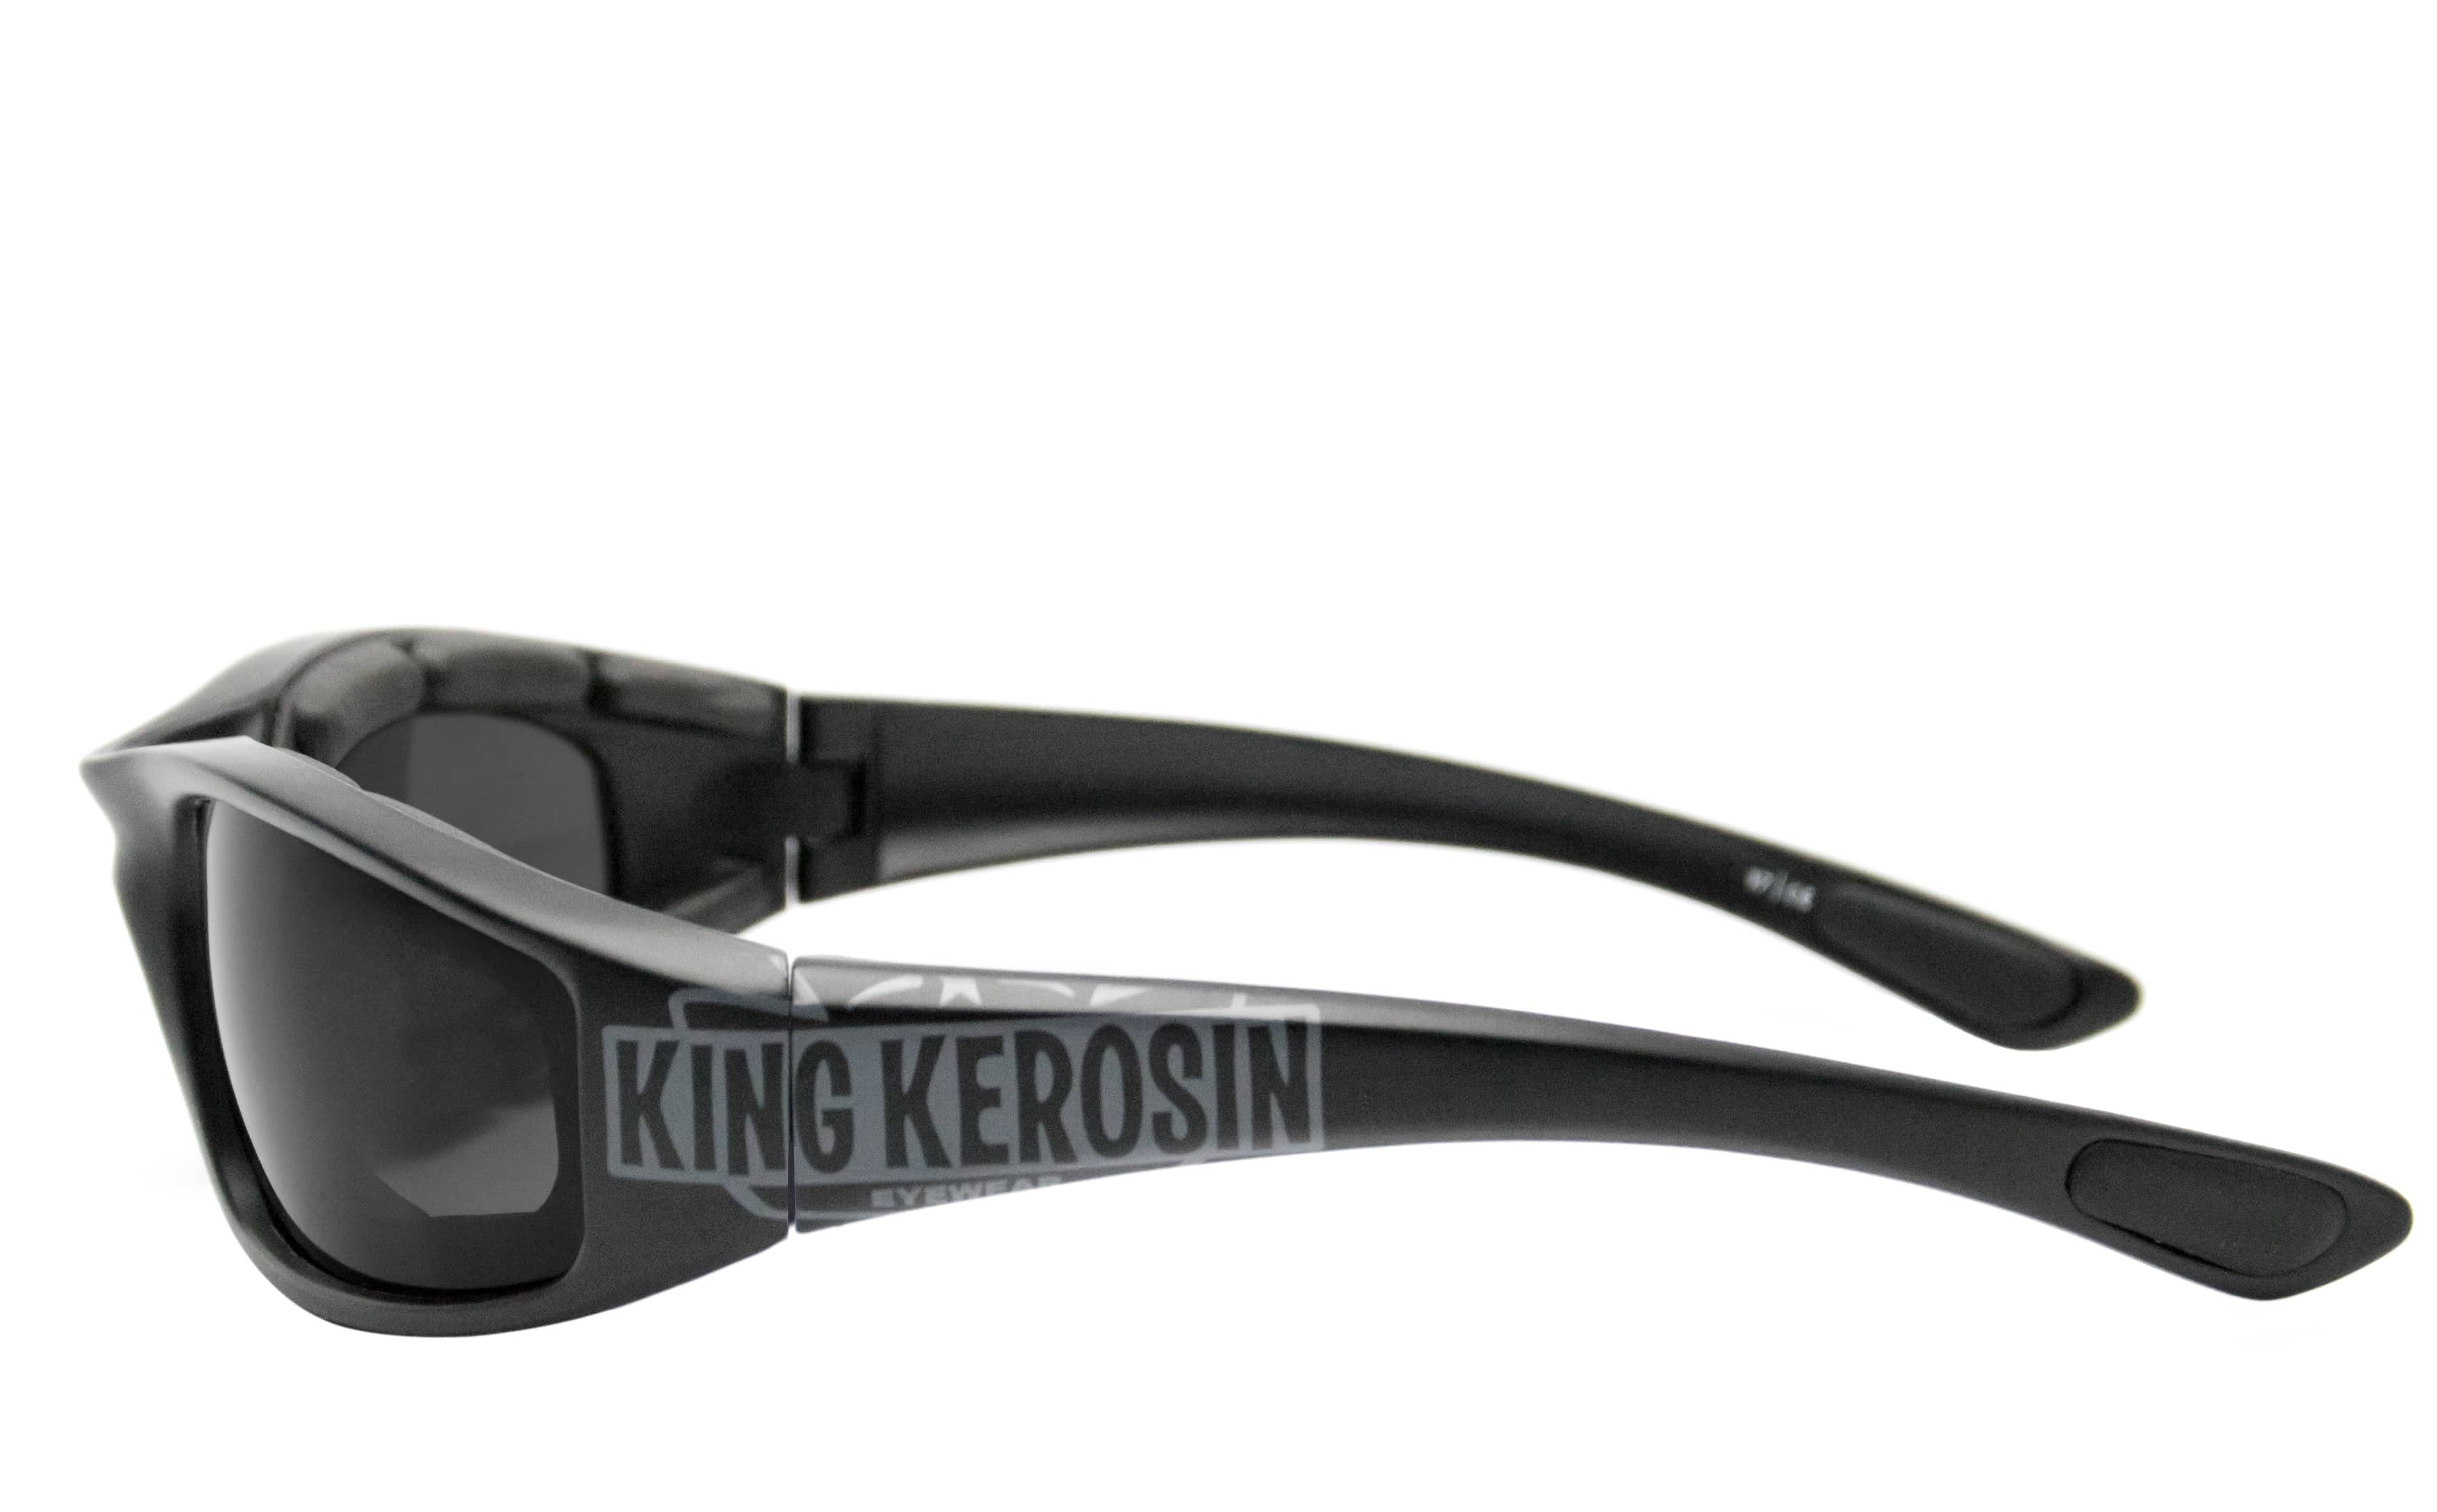 gepolstert, KingKerosin Kunststoff-Sicherheitsglas Steinschlagbeständig Motorradbrille KK140 durch